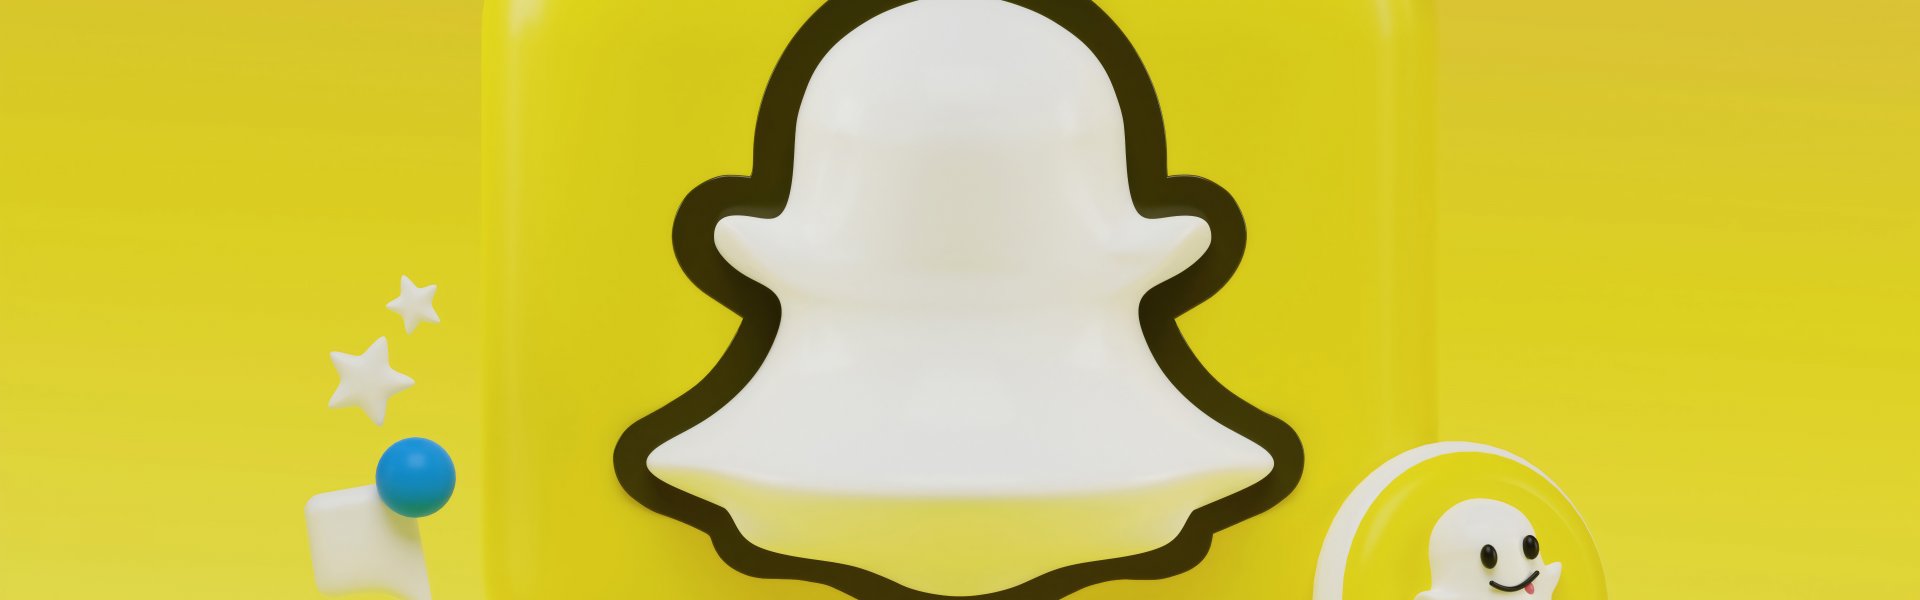 Ako si zrušiť účet na Snapchate?